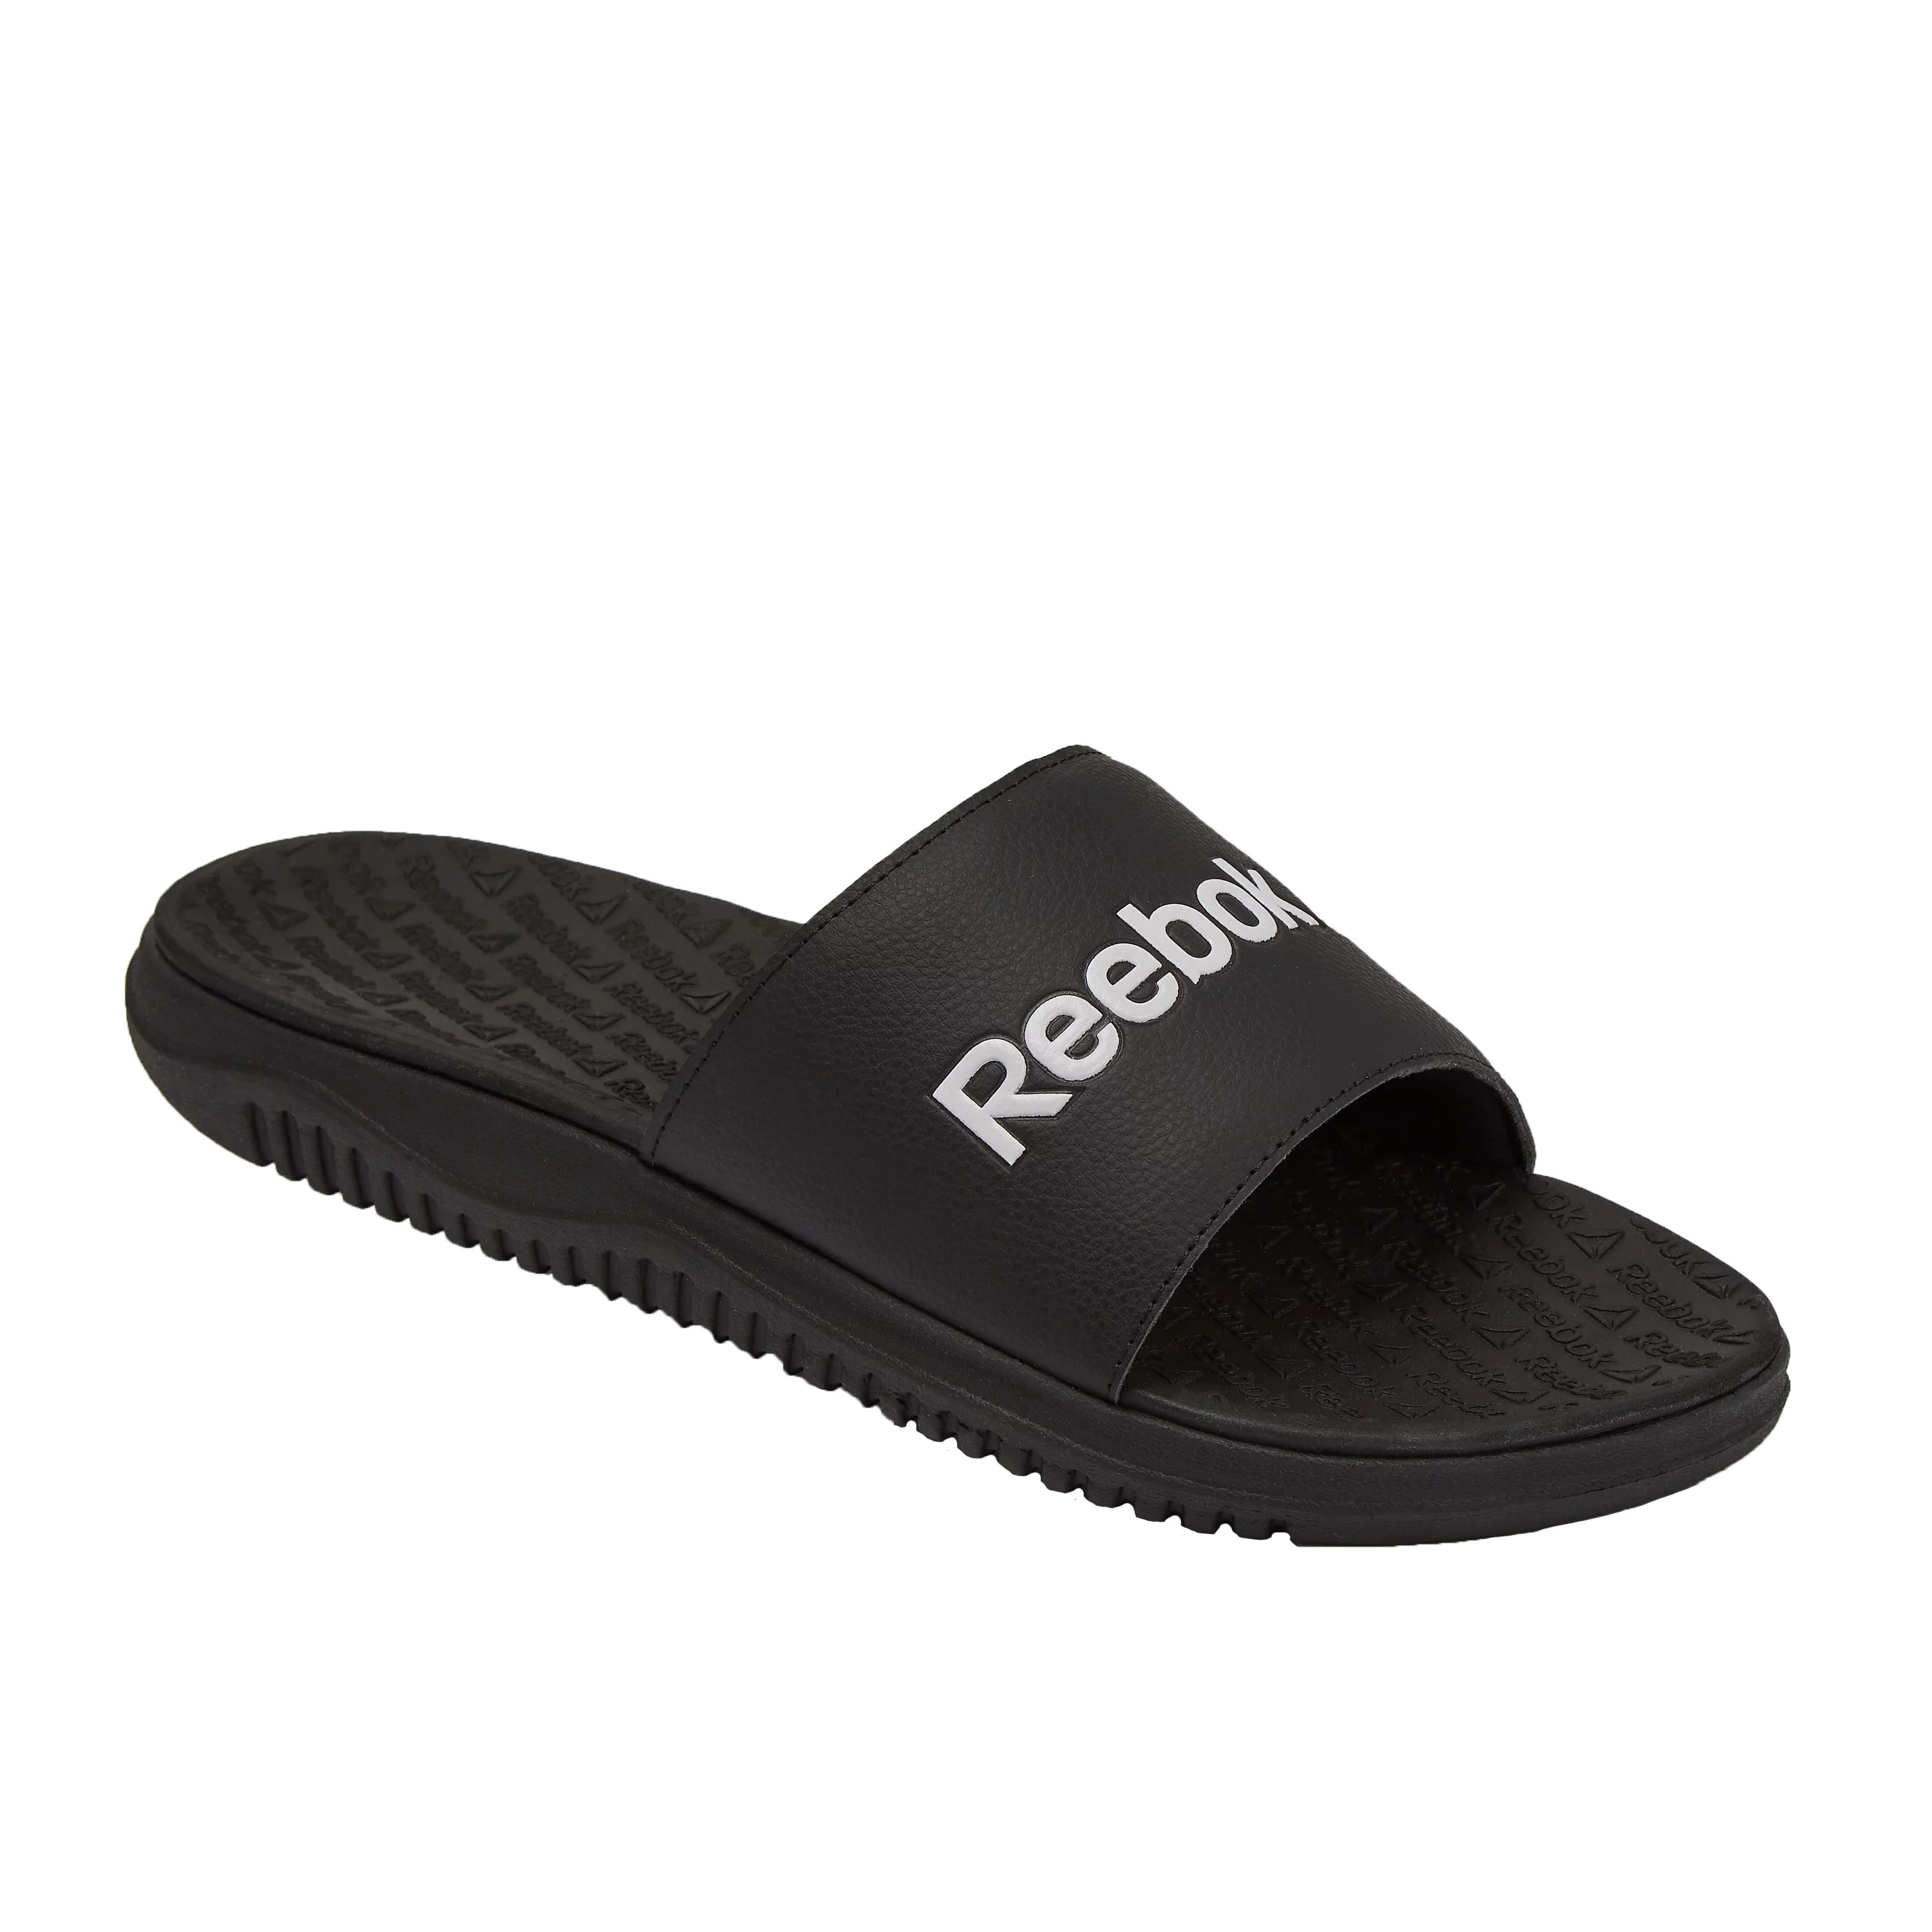 Reebok Men's Dual Density Comfort Slide Sandals | Walmart (US)